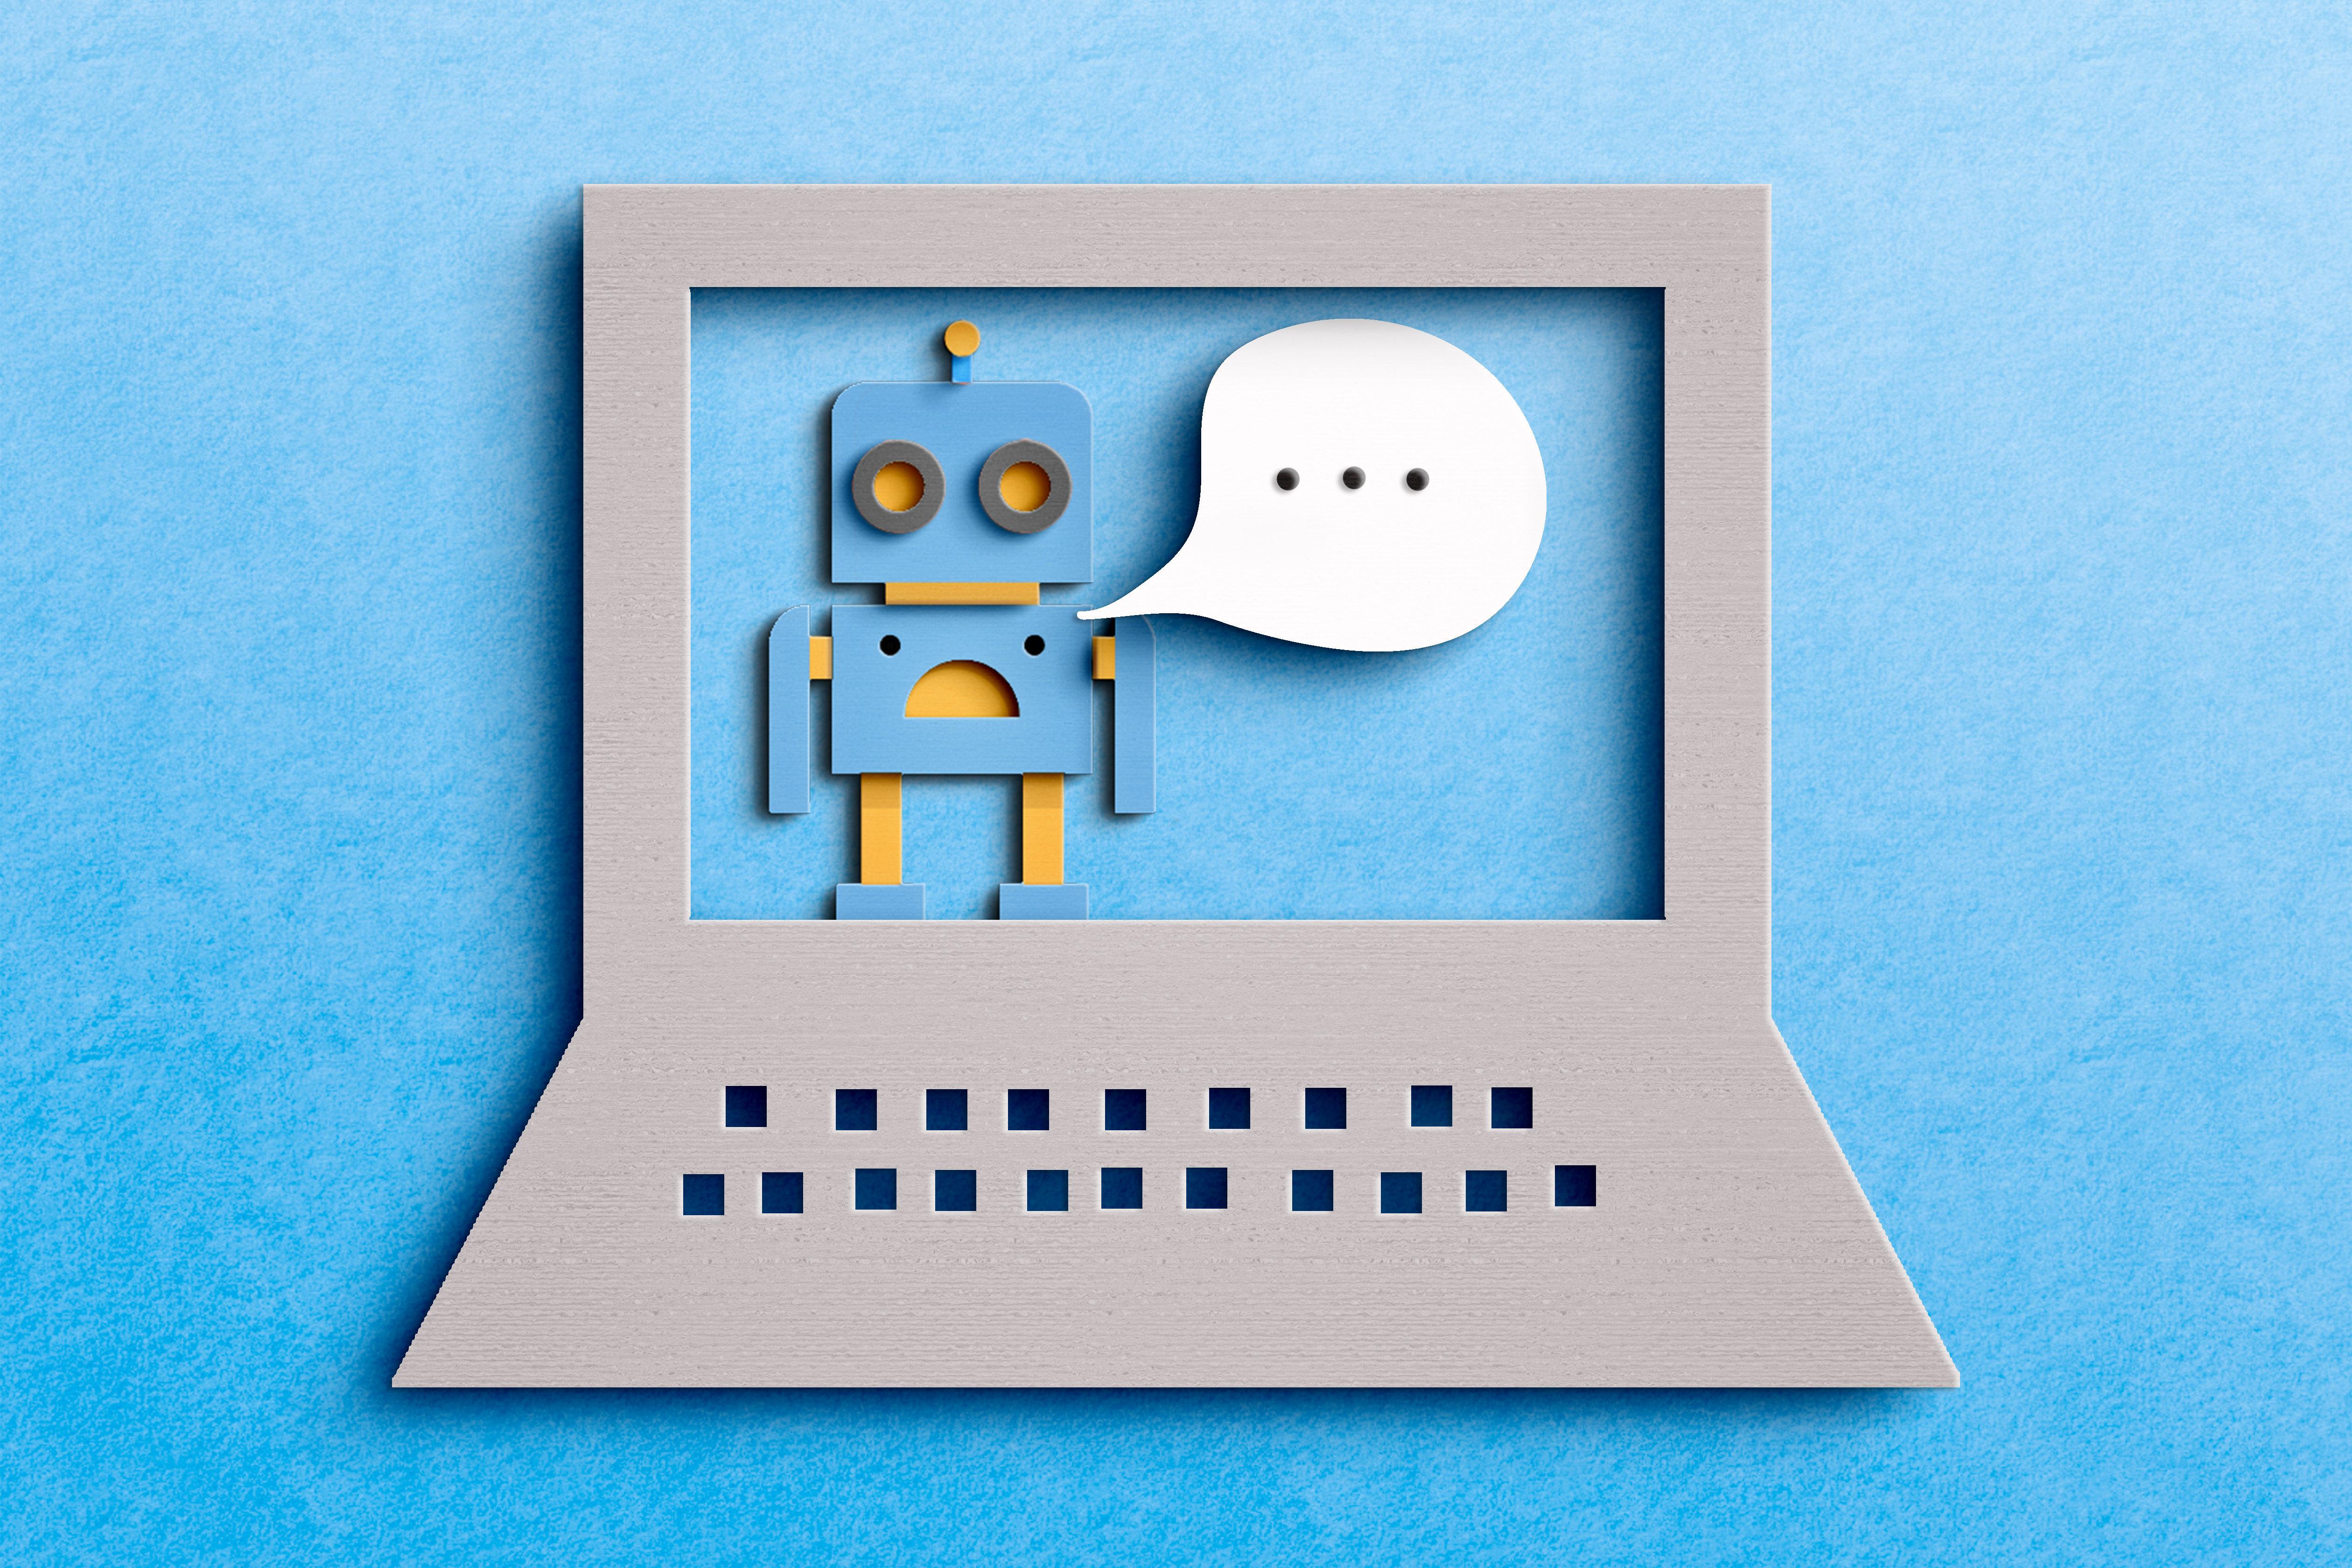 谷歌正在接受预订与其所谓的敏感聊天机器人交谈